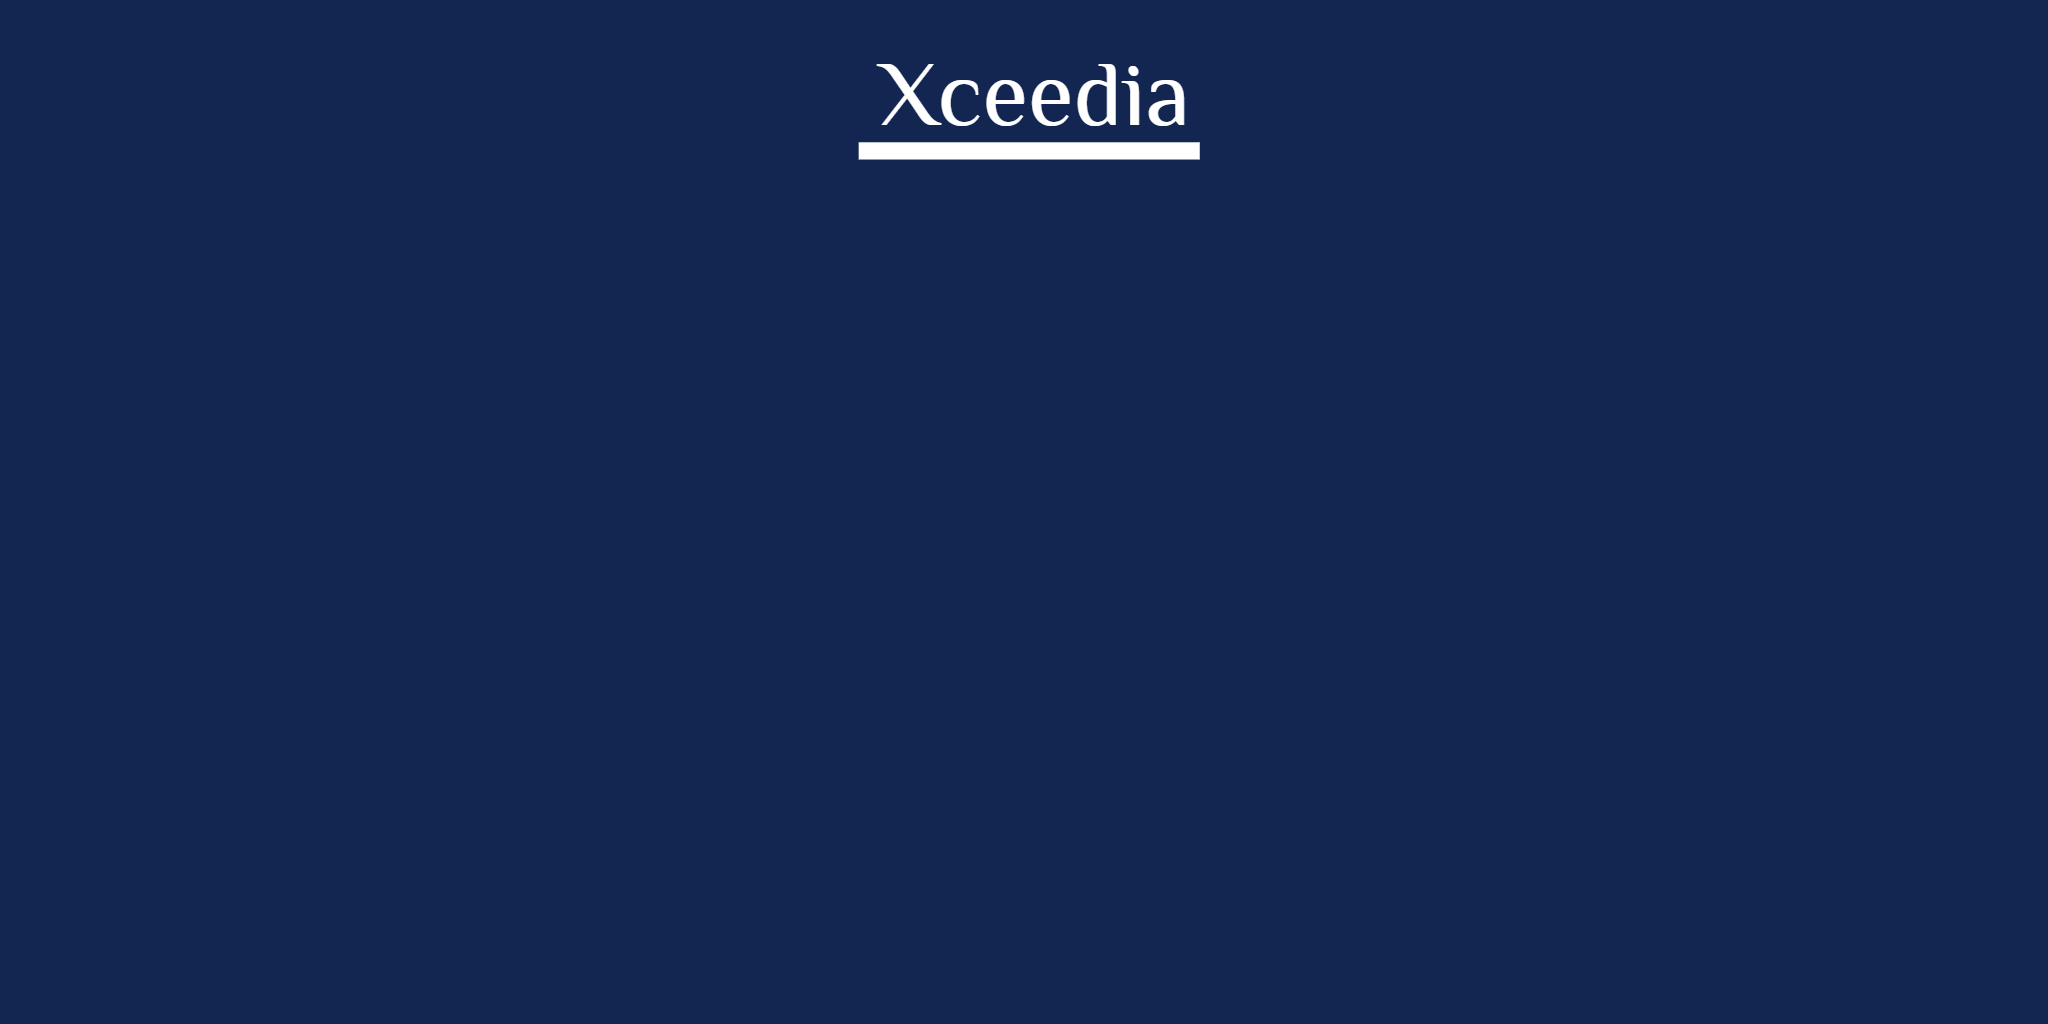 Xceedia